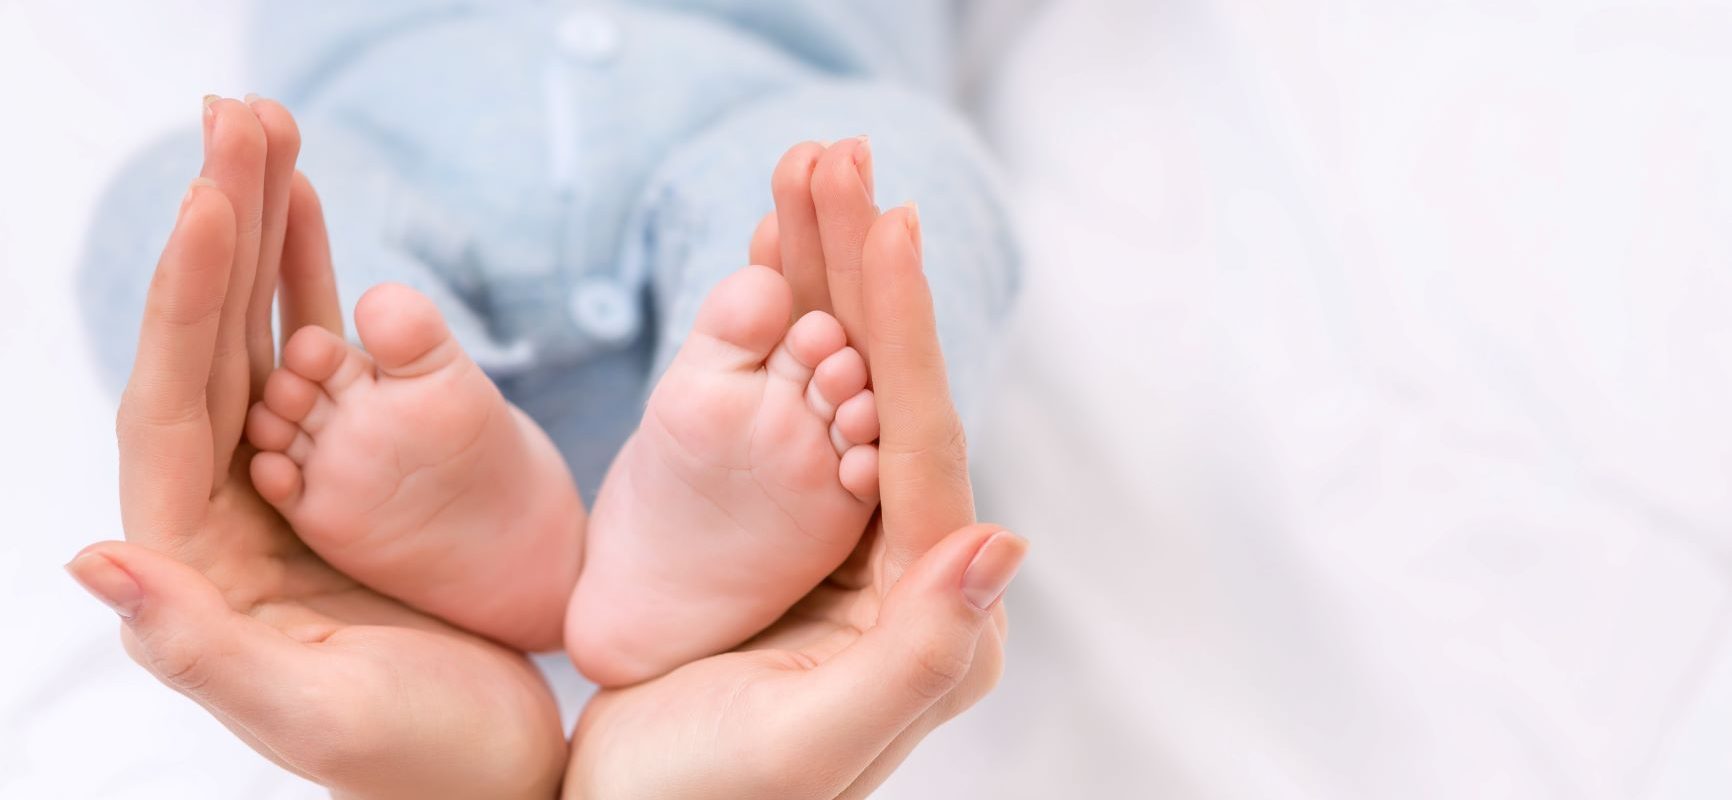 Relaksujący masaż Shantala u niemowlęcia - jak go wykonać?